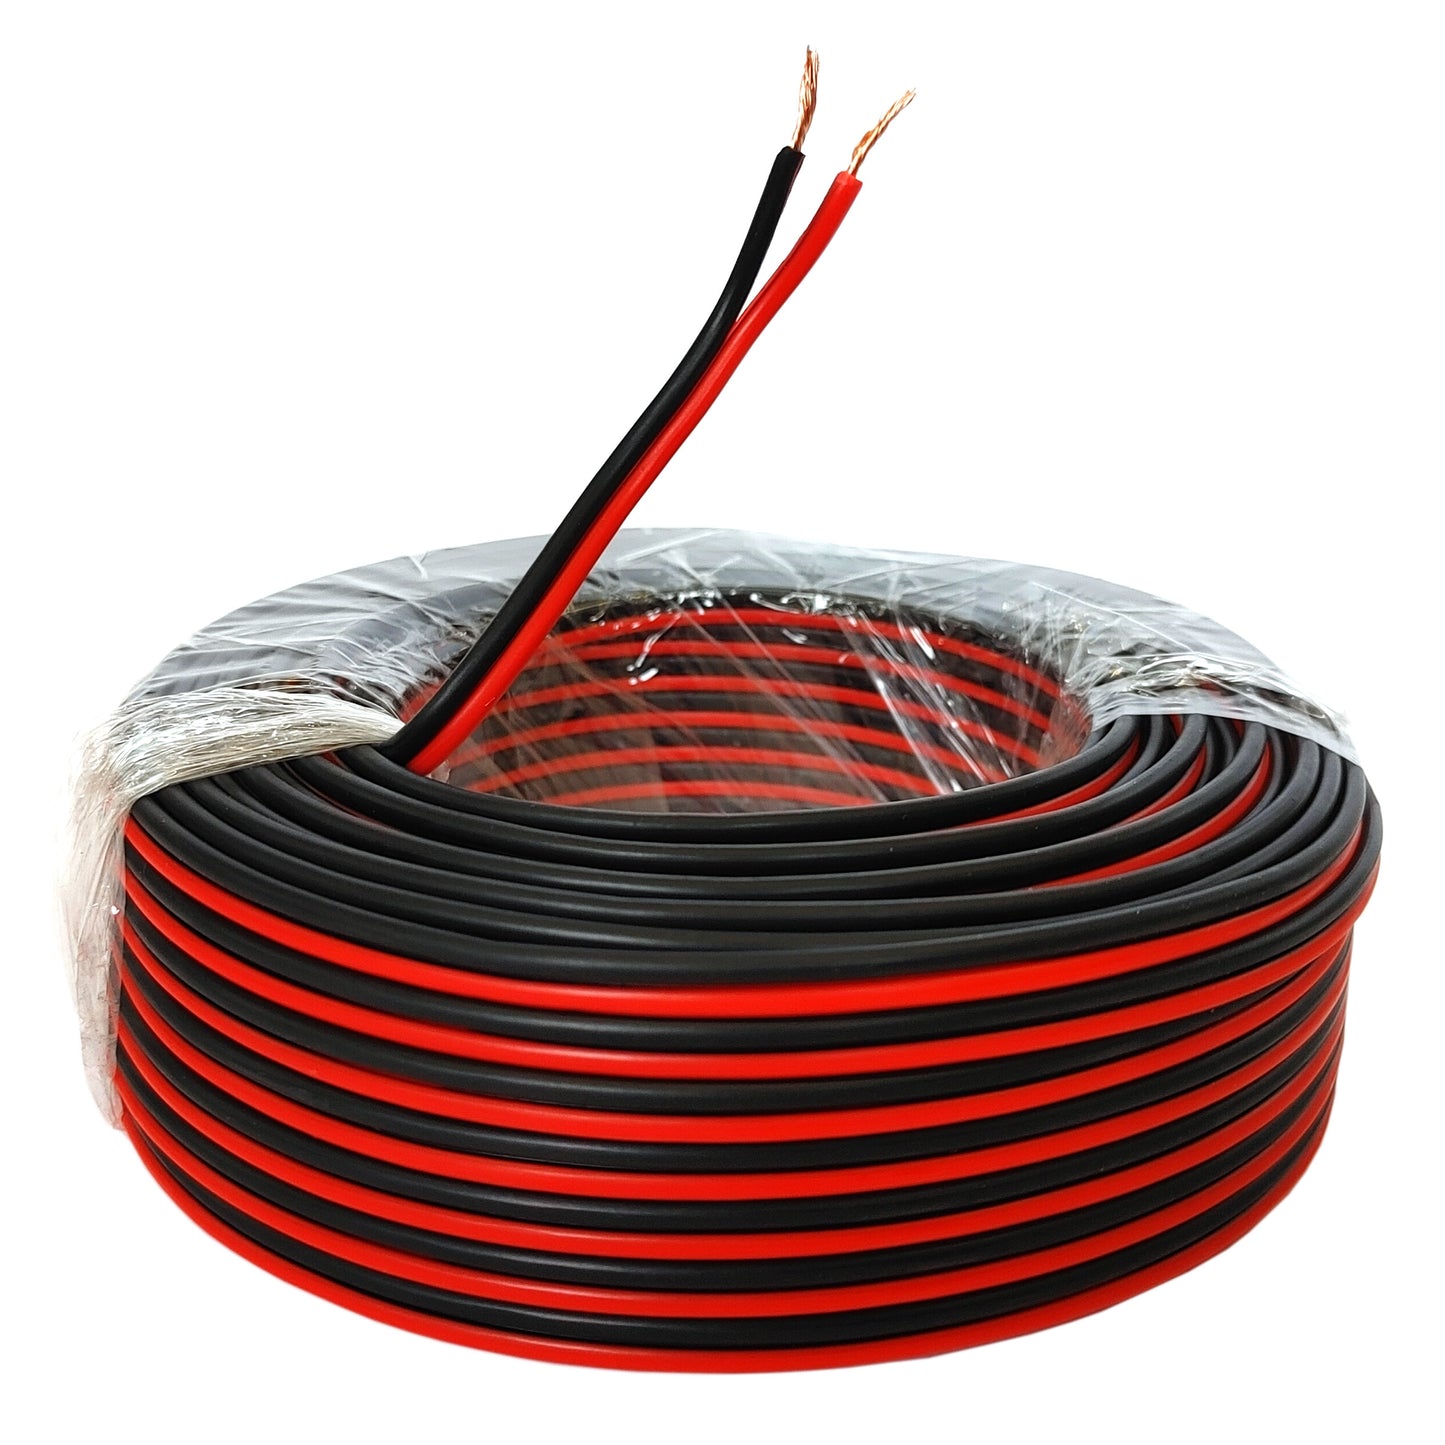 Lautsprecherkabel 100m rot/schwarz 0,75 mm² Kupfer Audiokabel Boxenkabel Litze